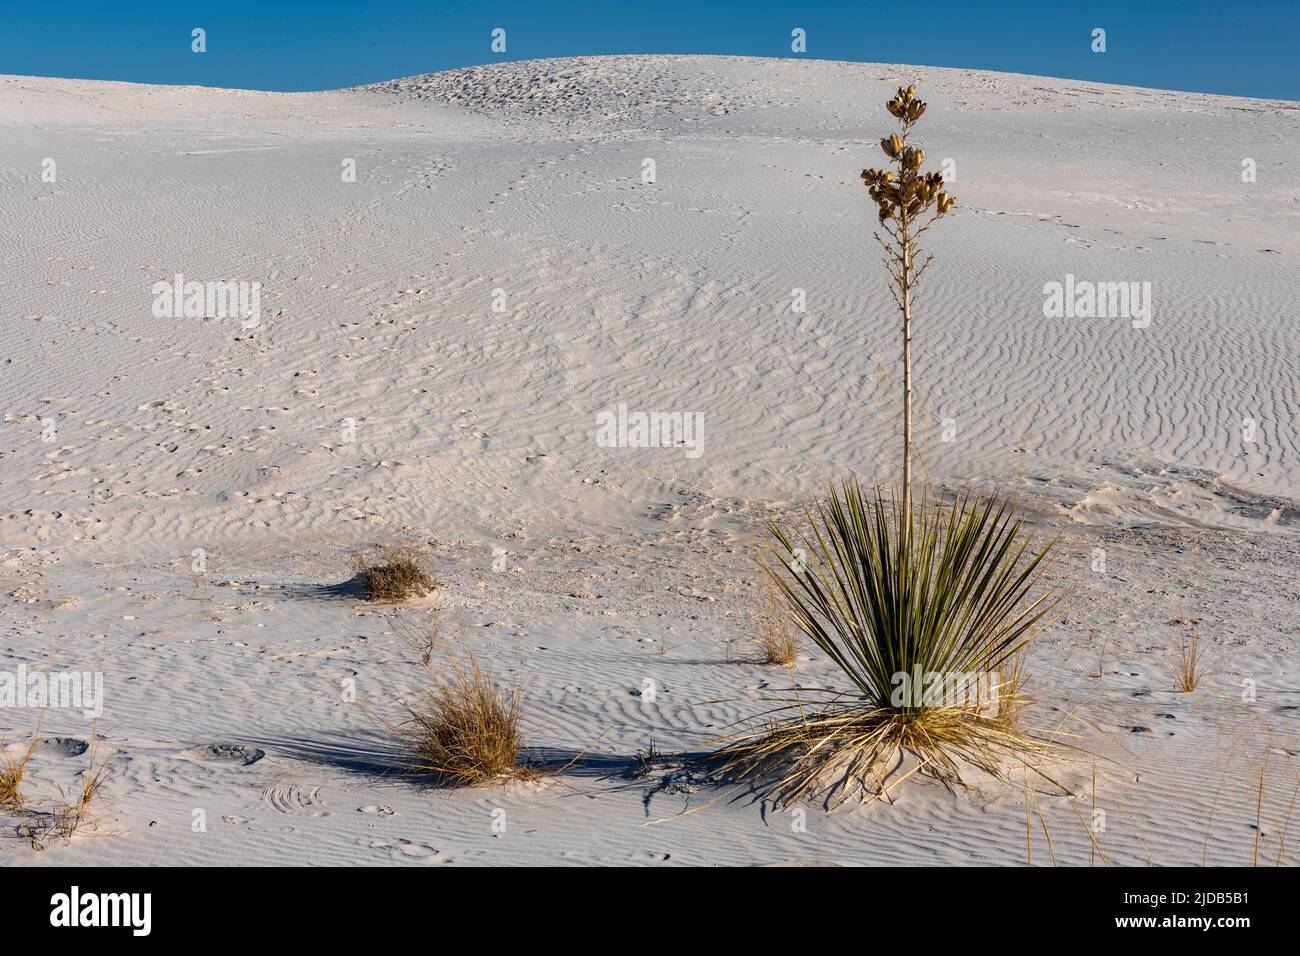 Plante de yucca survivant dans le monument national de White Sands ; Alamagordo, Nouveau-Mexique, États-Unis d'Amérique Banque D'Images